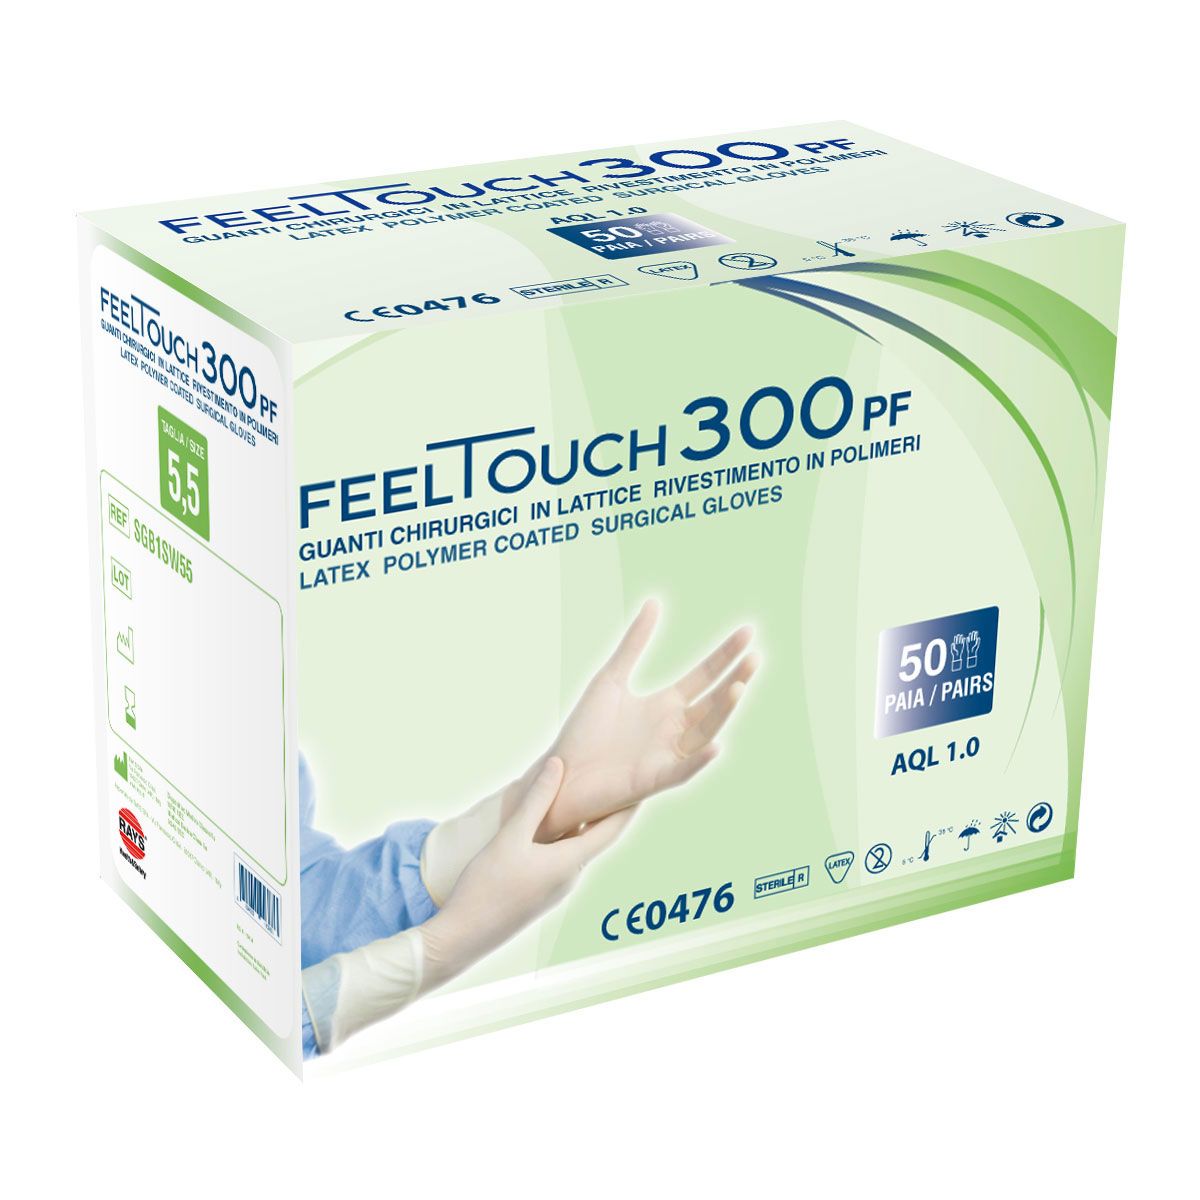 feeltouch-300pf-guanti-chirurgici-in-lattice-senza-polvere-50-pz-1